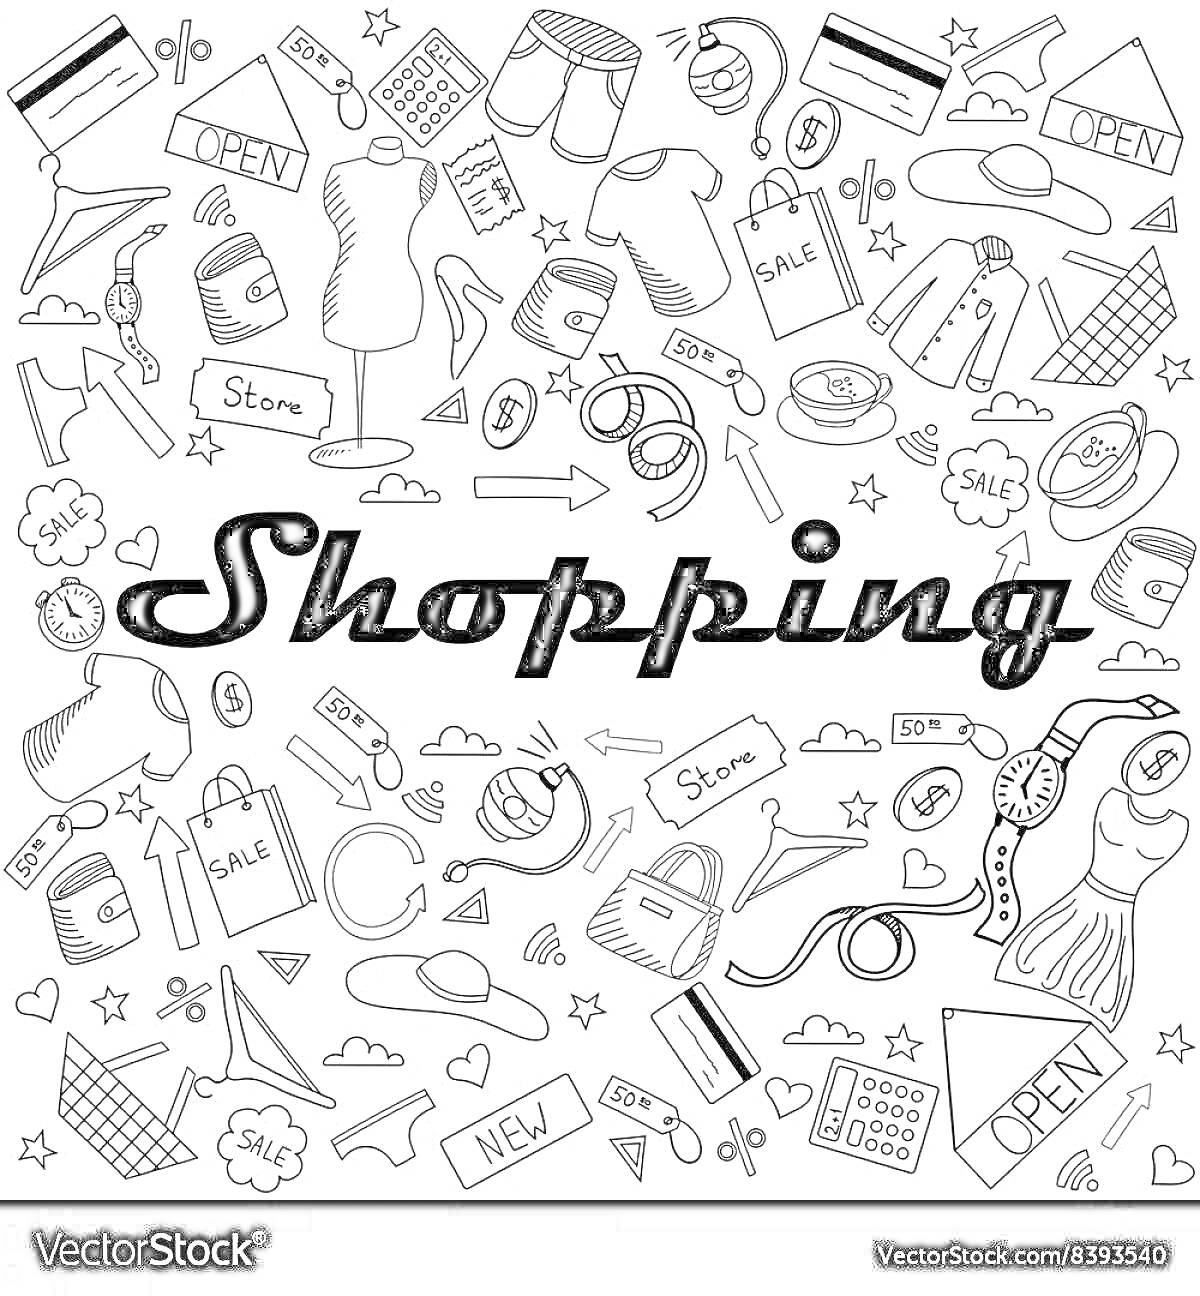 Раскраска Раскраска на тему шоппинг: одежда, сумки, очки, часы, корзинки для покупок, тележка, ценники, кредитные карты, процентные скидки, слова 